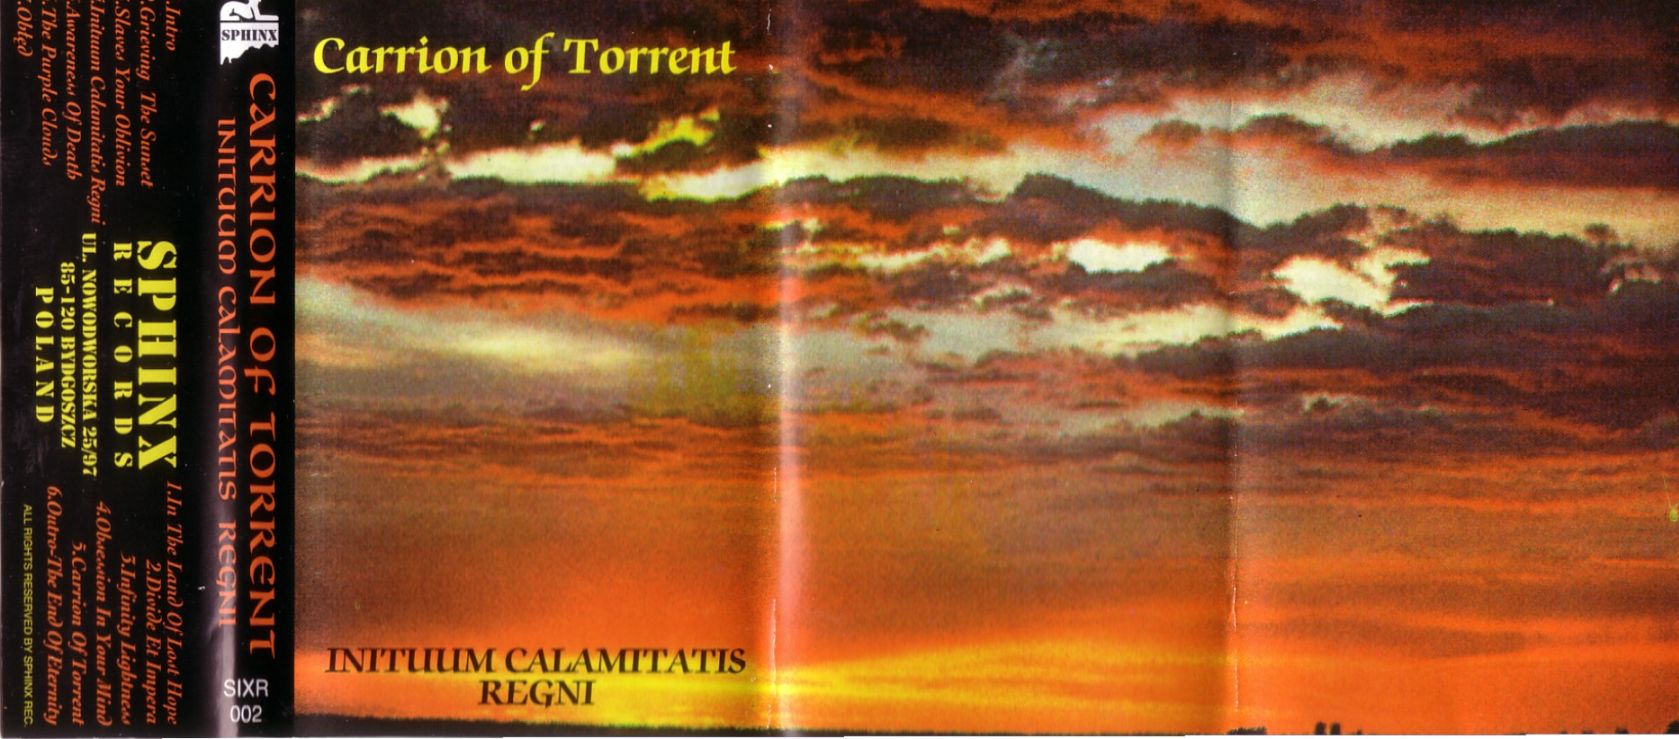 Carrion of Torrent - Inituum Calamitatis Regni